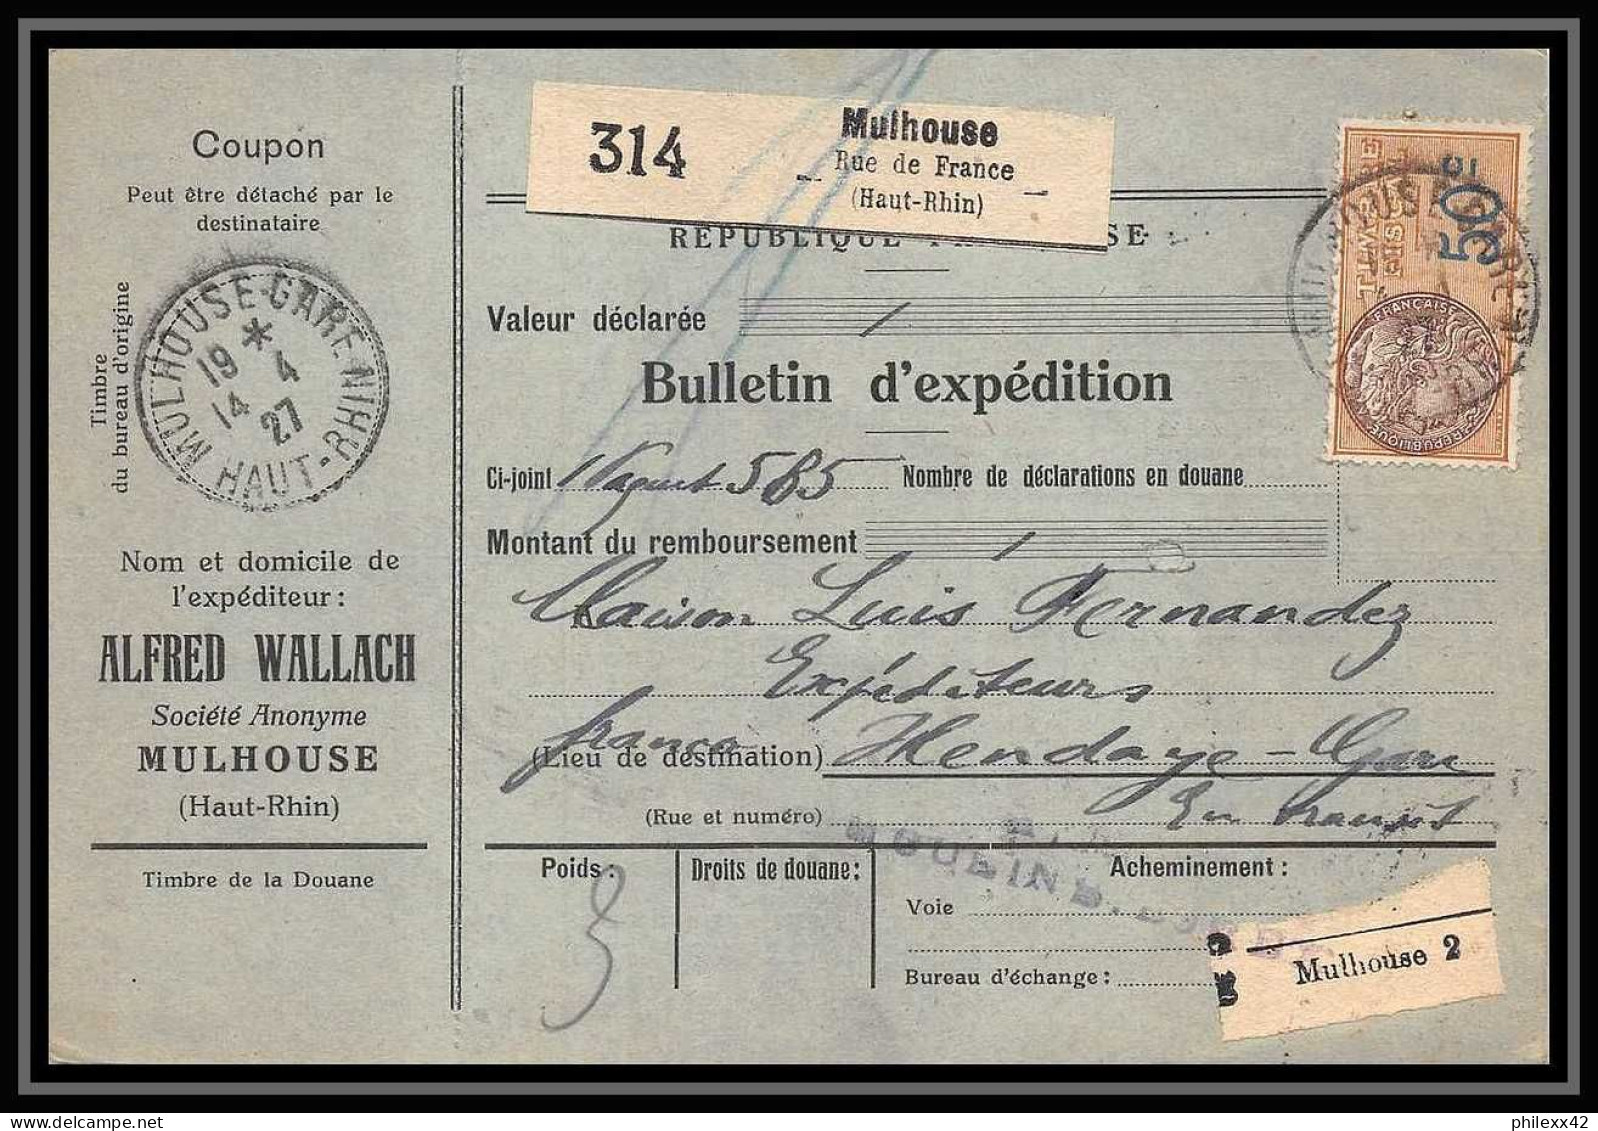 25056 Bulletin D'expédition France Colis Postaux Fiscal Haut Rhin - 1927 Mulhouse Merson 206 Alsace-Lorraine  - Briefe U. Dokumente